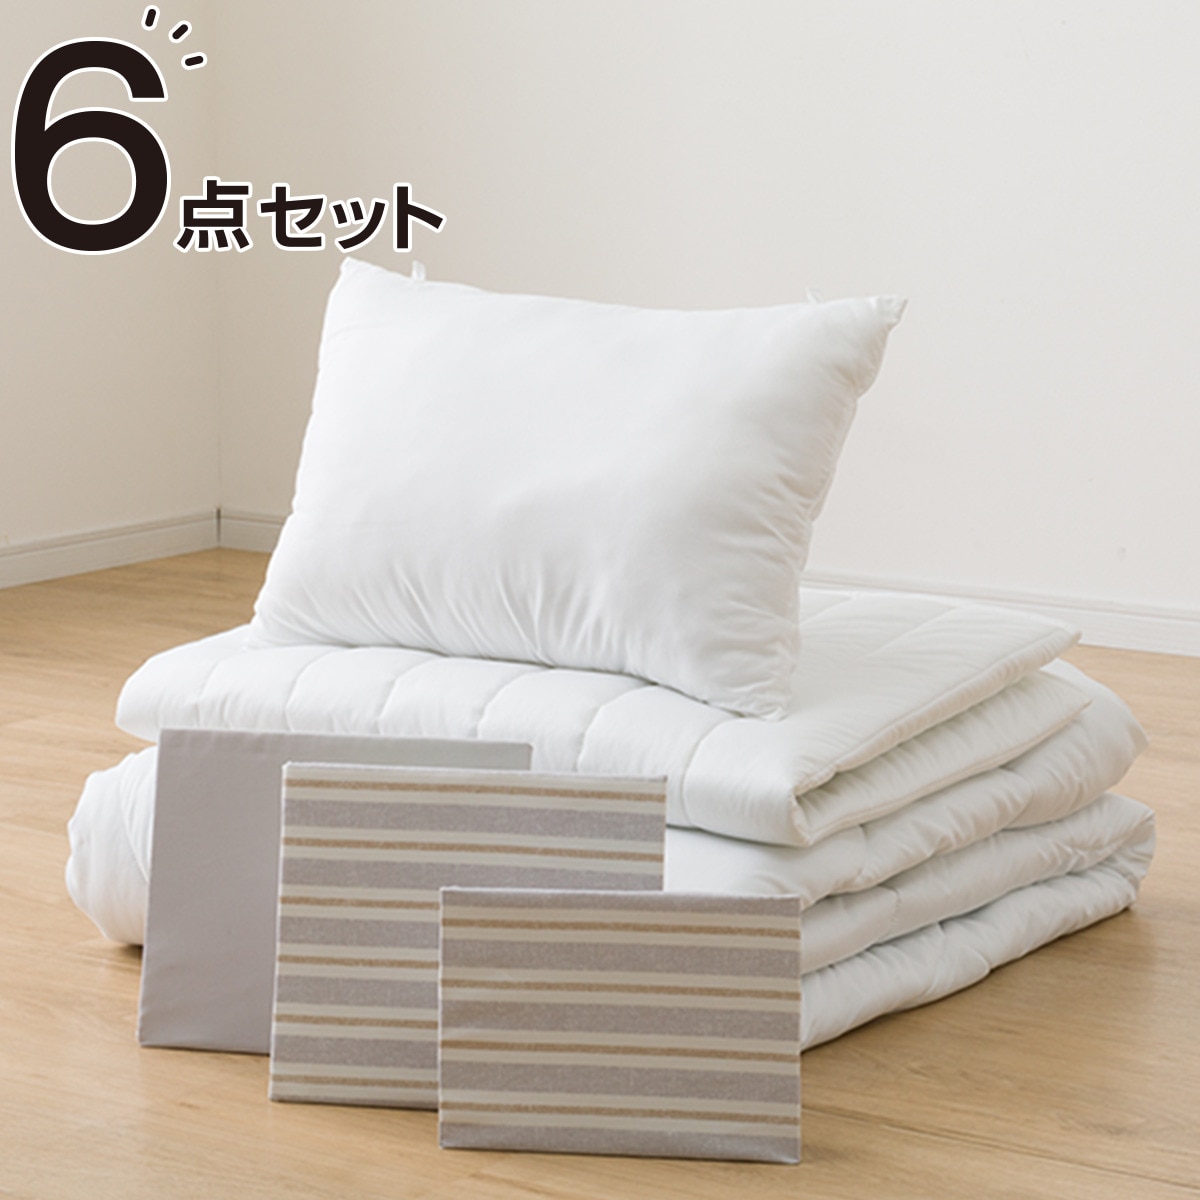 すぐに使えるベッド用寝具6点セット シングル( BD/GY S2402 S)通販